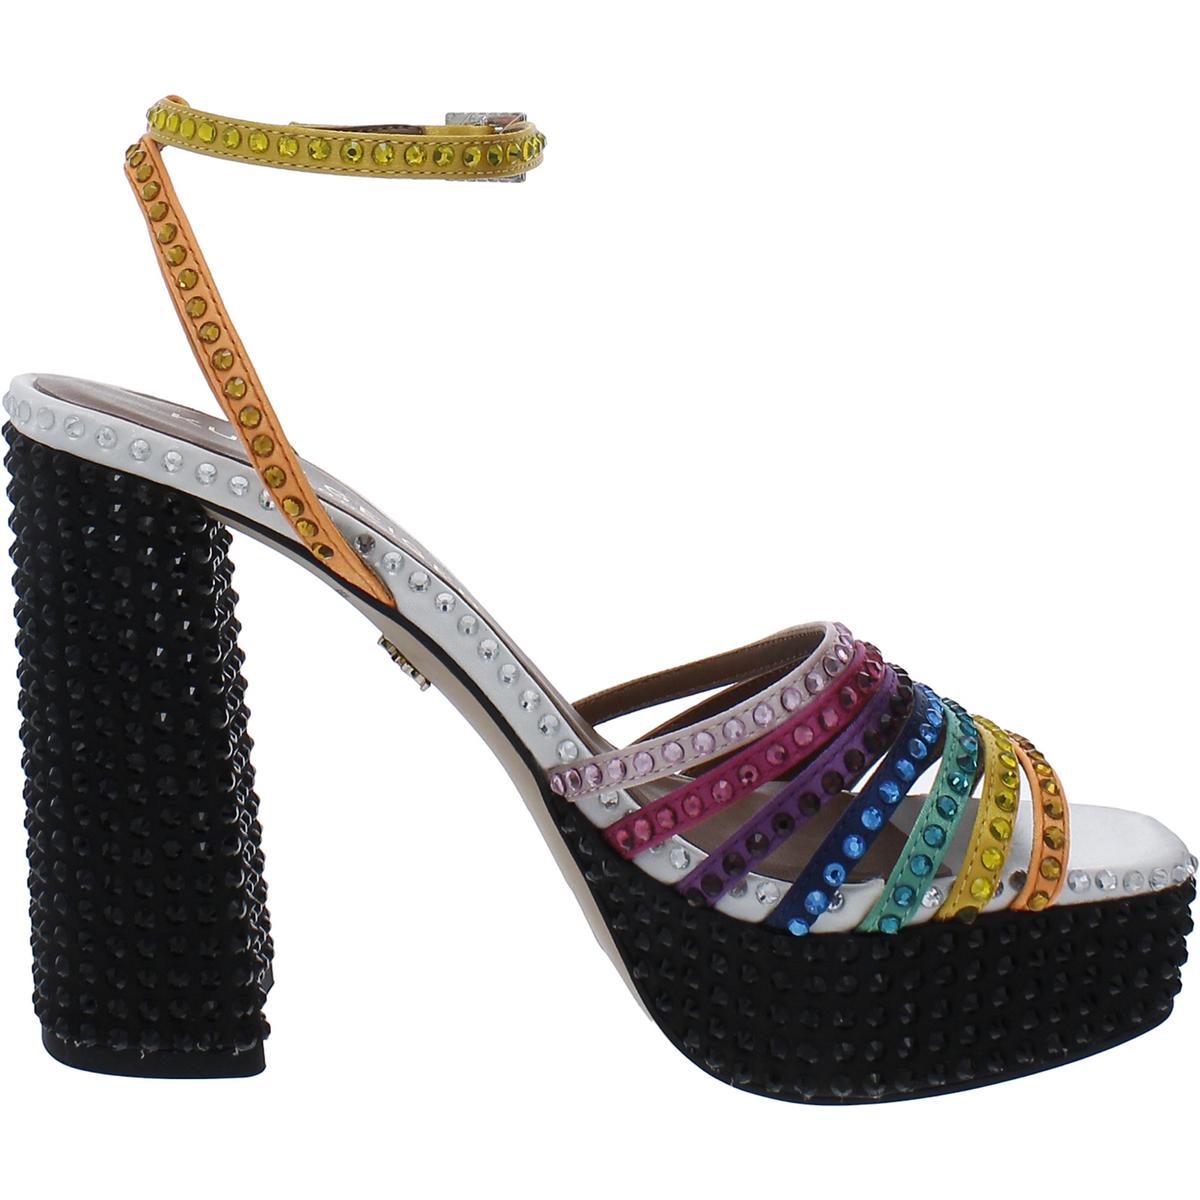 Kurt Geiger London Womens Embellished Ankle Strap Platform Sandals